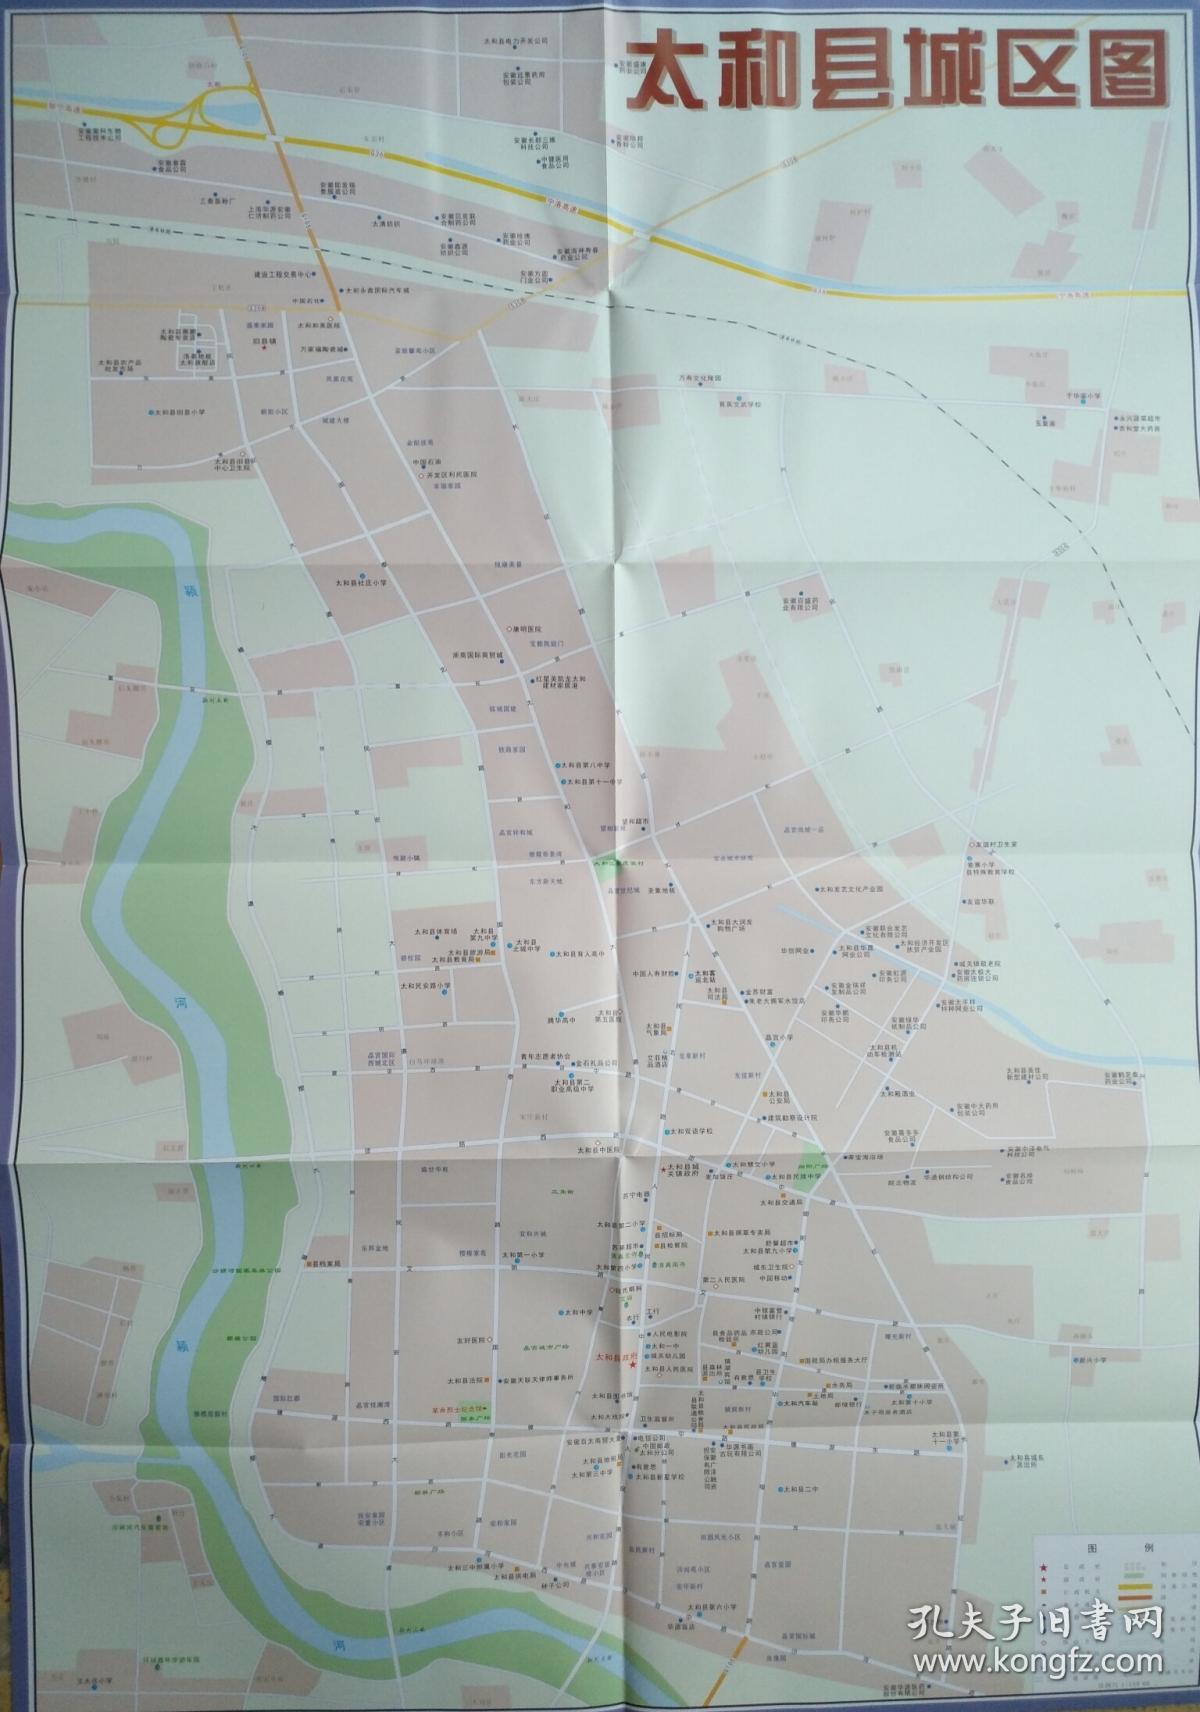 阜阳市太和县旅游交通图 2018年4月 太和县地图 太和地图 阜阳地图图片